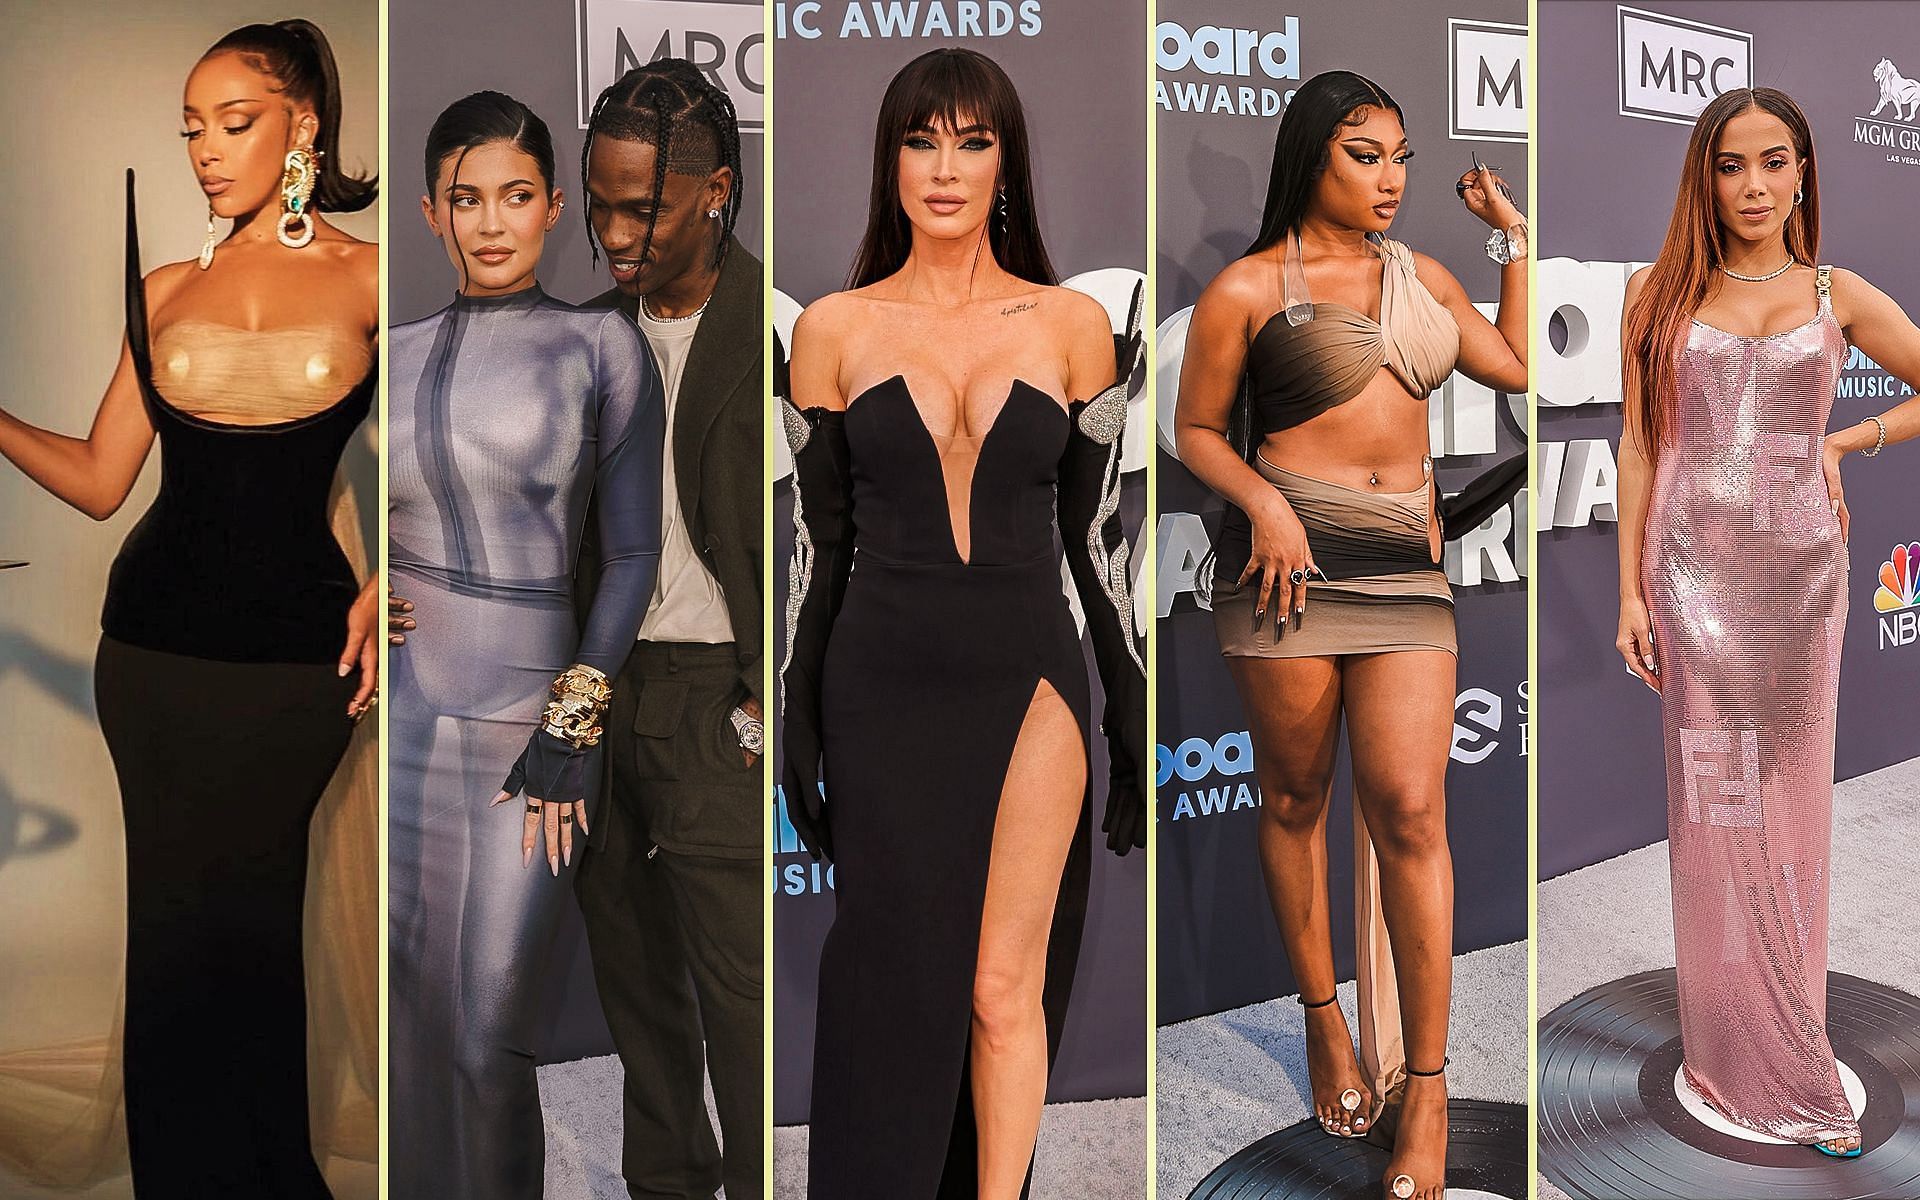 Billboard Music Awards 2022 red carpet: 5 best-dressed women (Image via Sportskeeda)